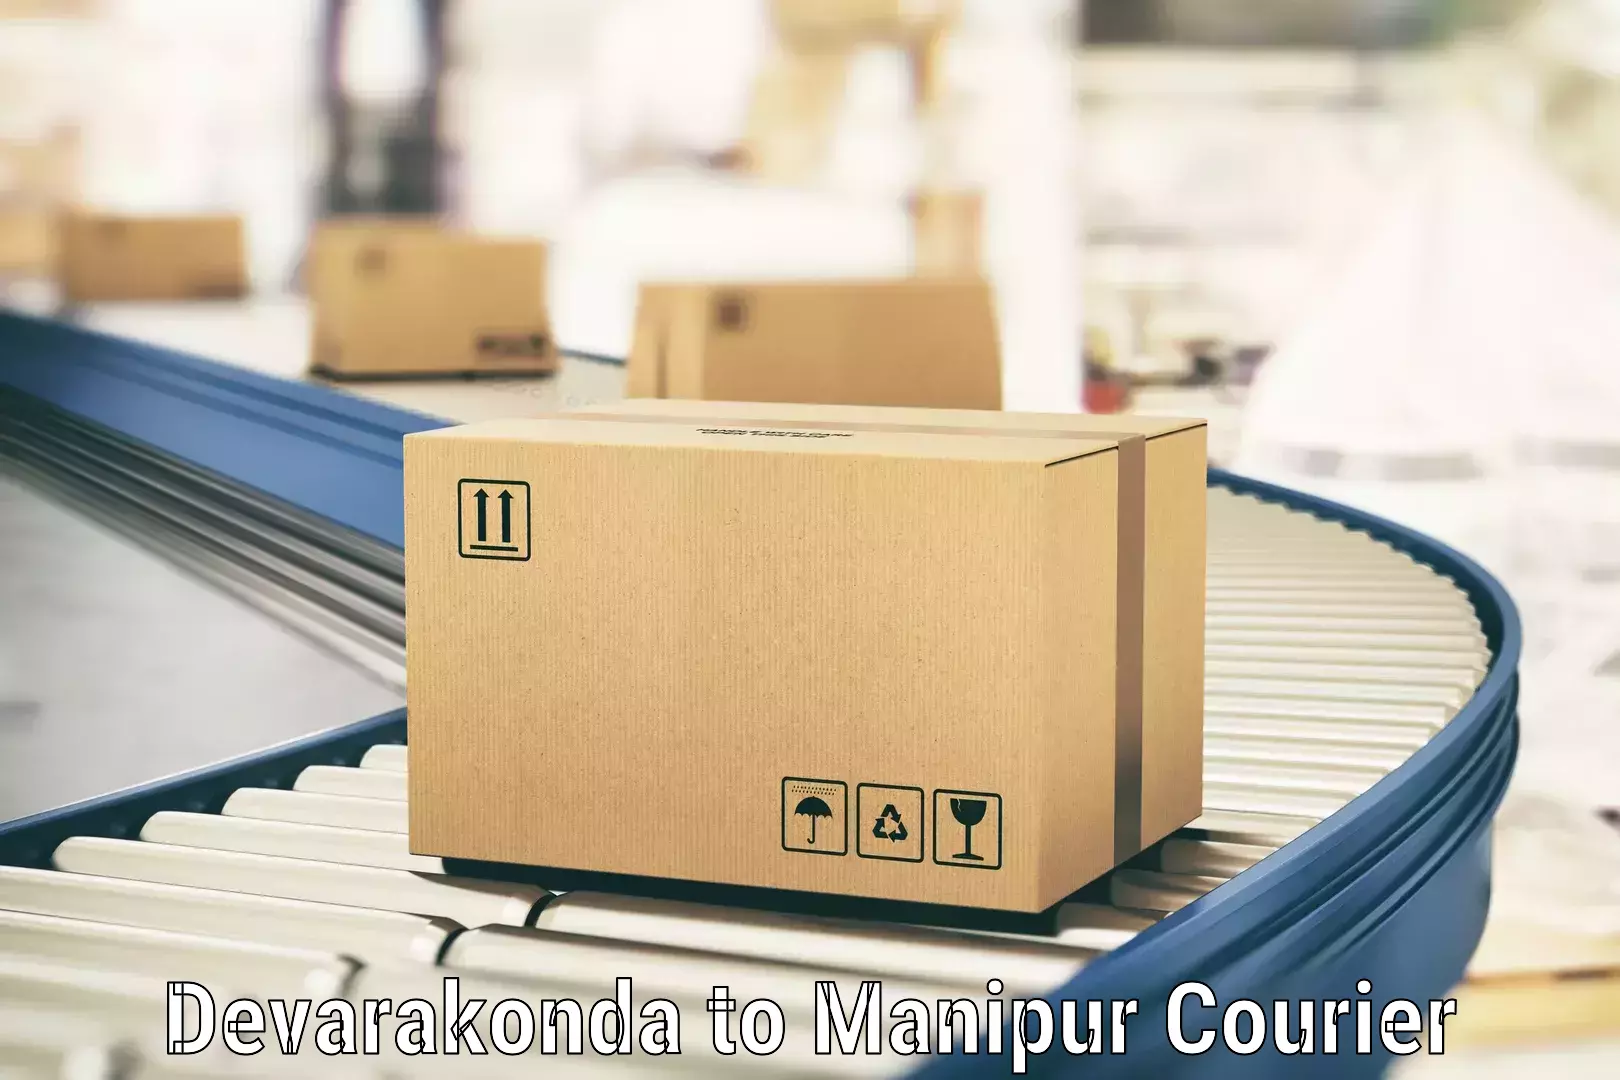 State-of-the-art courier technology Devarakonda to Moirang